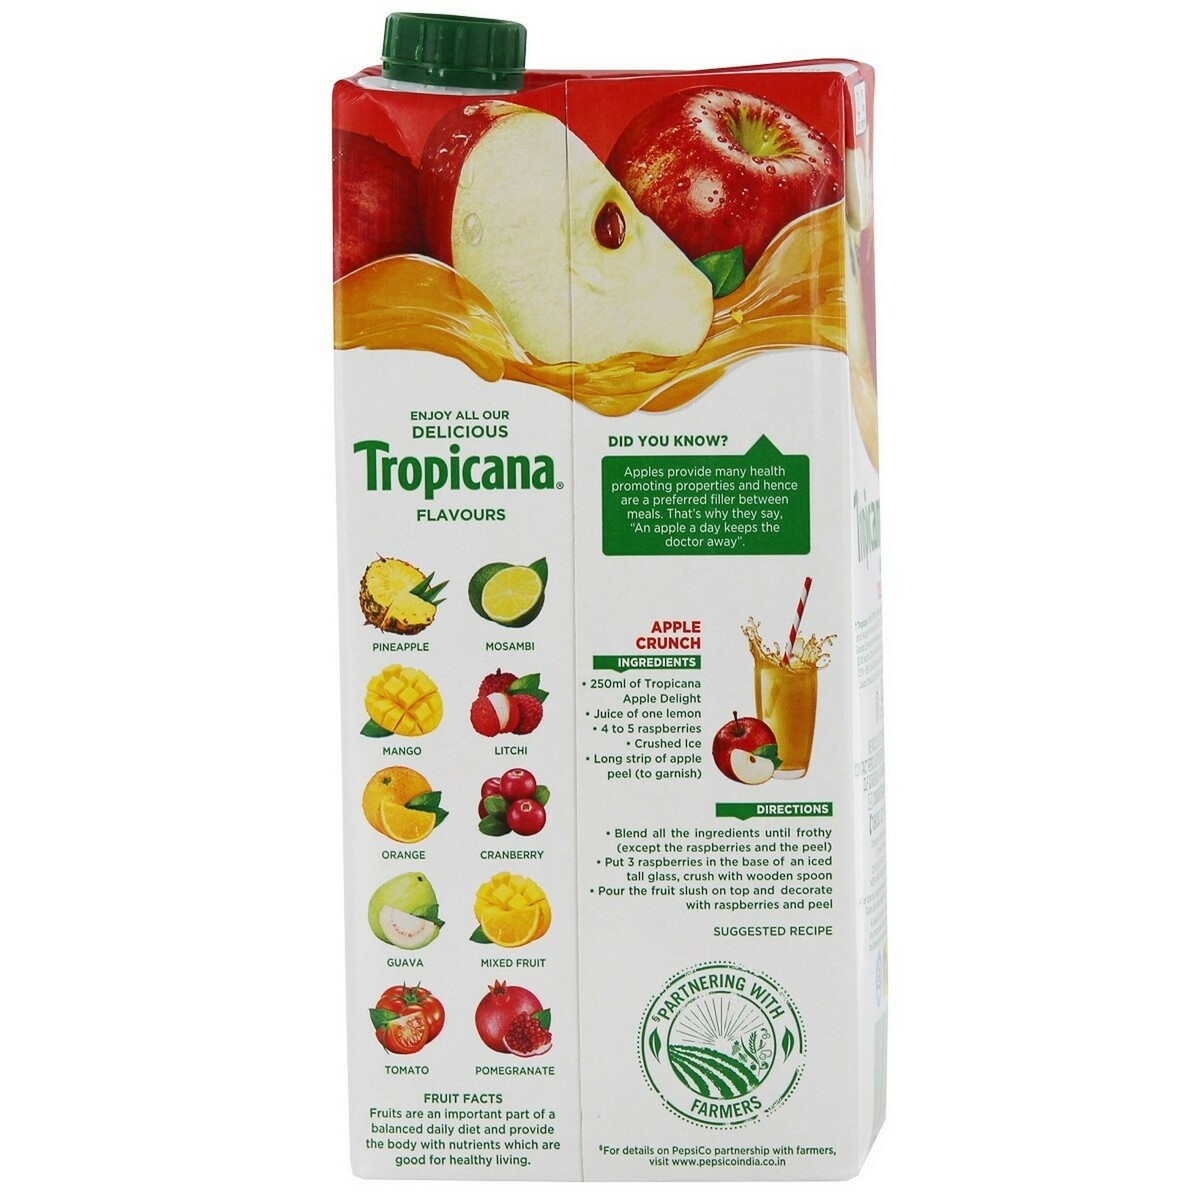 Tropicana Fruit Juice Pure Apple 1Litre